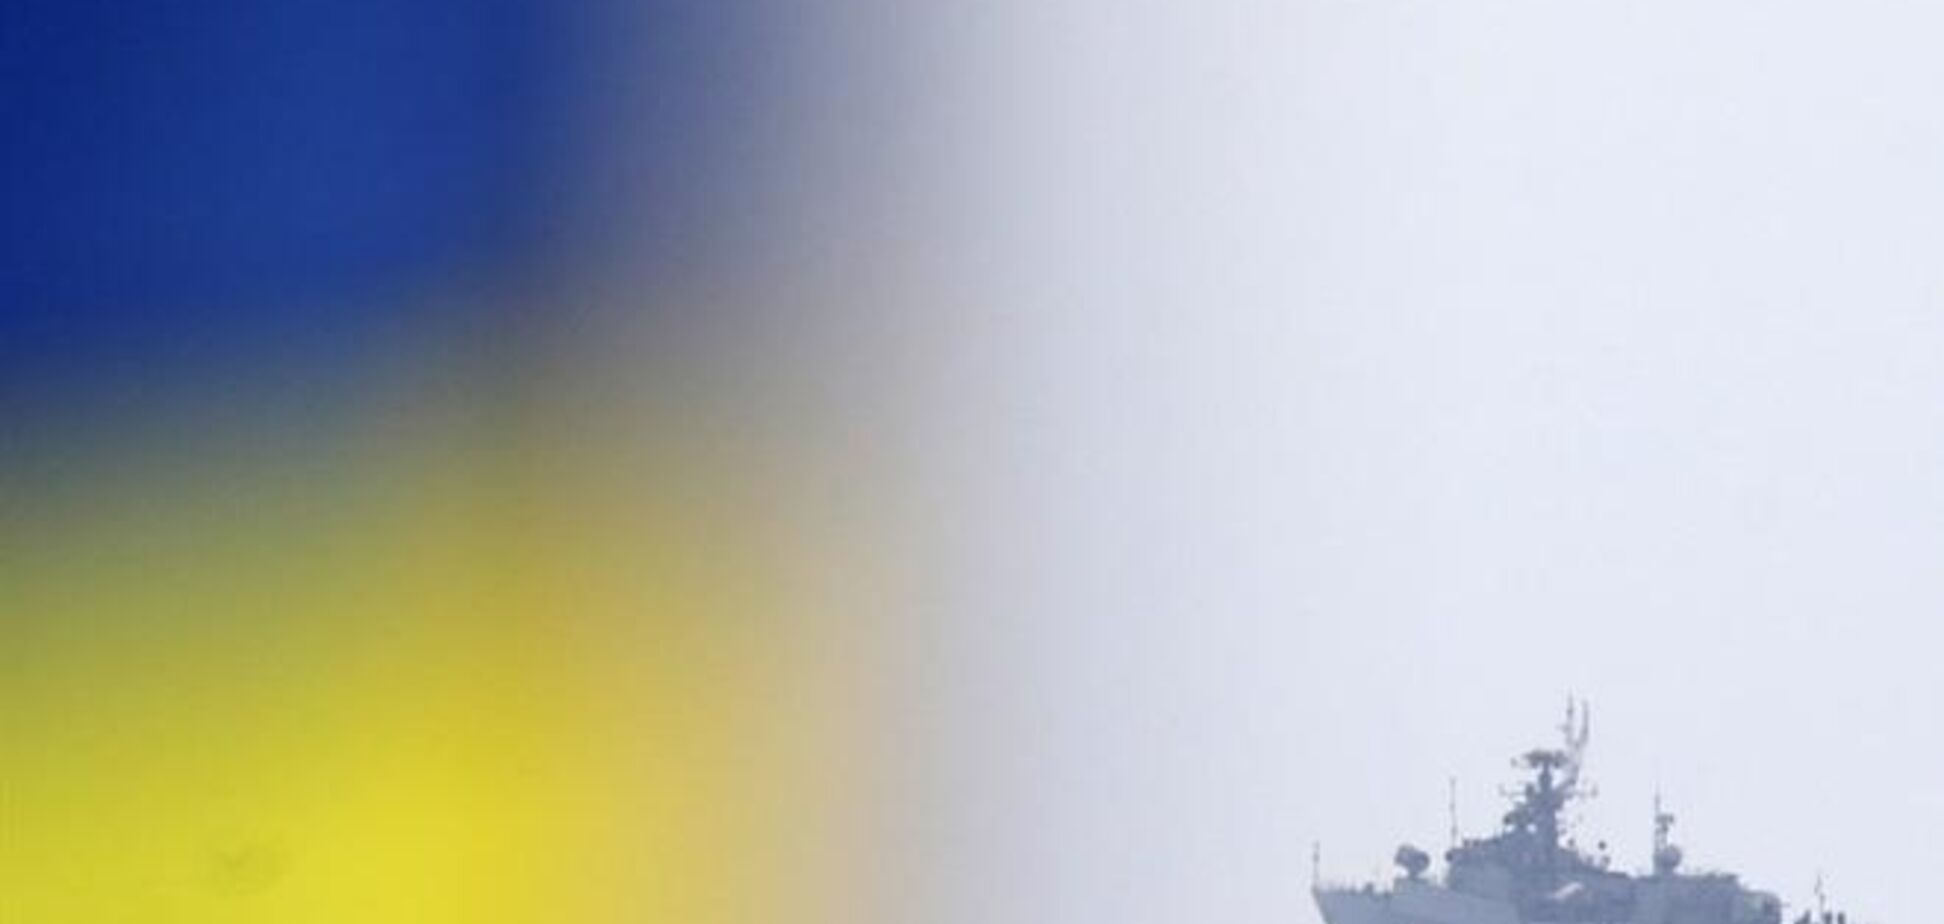 Состоялась попытка вооруженного захвата штаба ВМС Украины